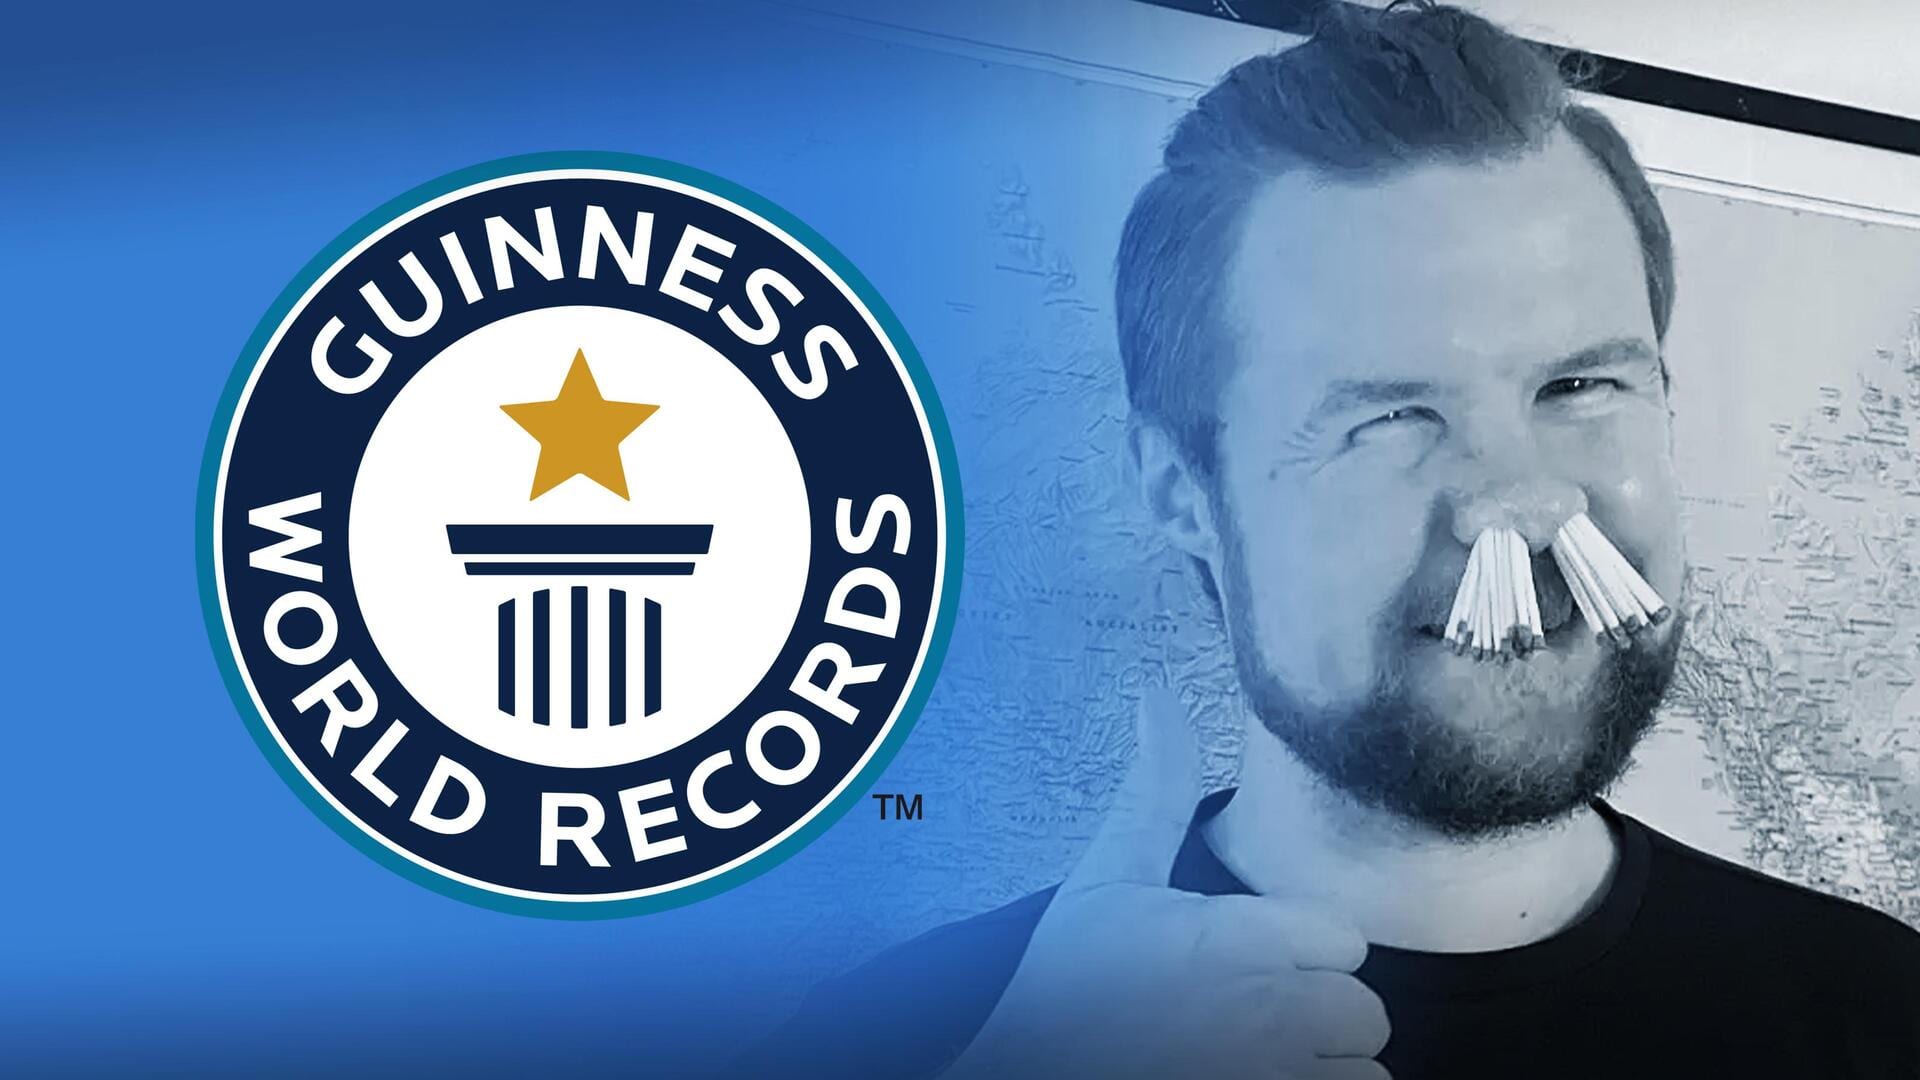 डेनमार्क: विश्व रिकॉर्ड बनाने के लिए व्यक्ति ने माचिस की तीलियों से भर लिया नाक